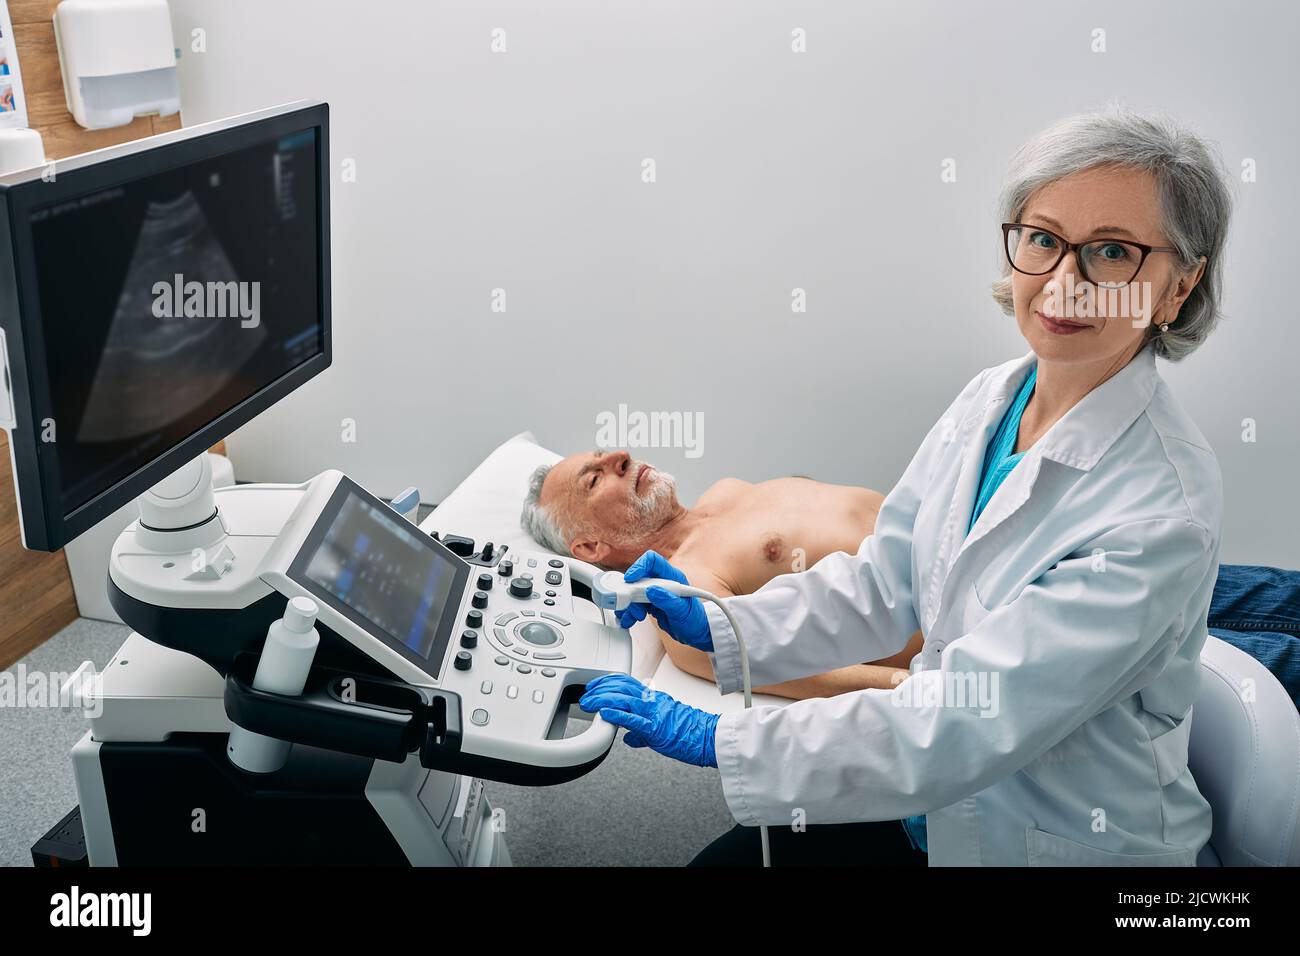 Ocupación ecografista. Retrato del ecografista cerca de la máquina de ultrasonido en la clínica médica durante la ecografía corporal del paciente masculino Foto de stock